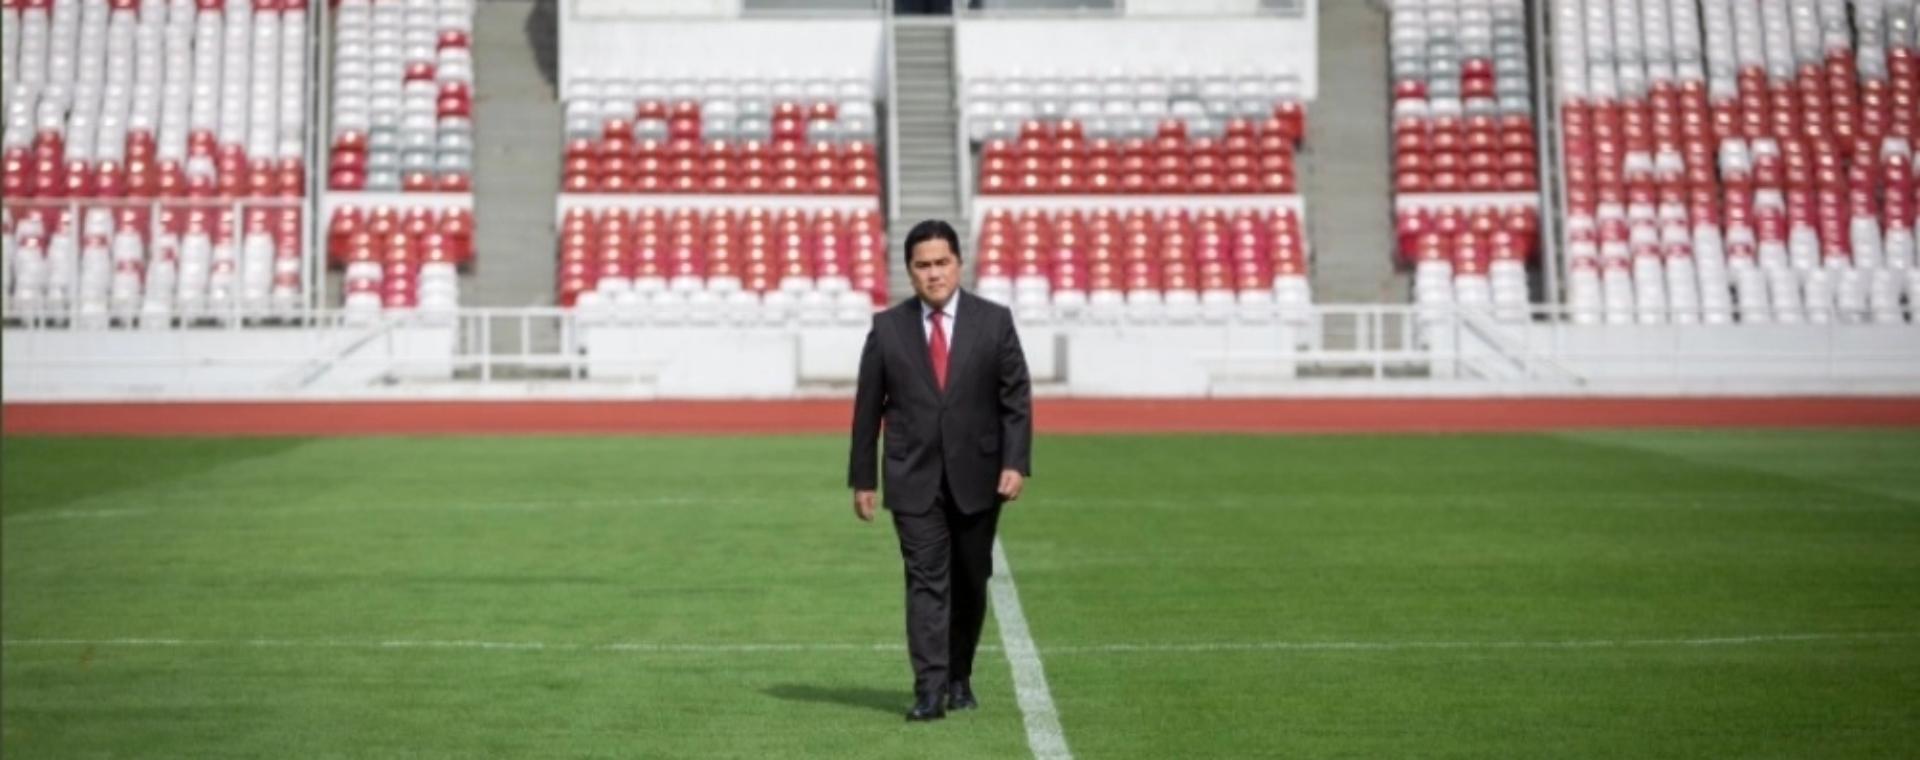 Menteri BUMN Erick Thohir terpilih menjadi Ketua Umum PSSI periode 2023-2027/akun Twitter Erick Thohir. Tentakel Erick Thohir di Klub-Klub Sepak Bola Indonesia